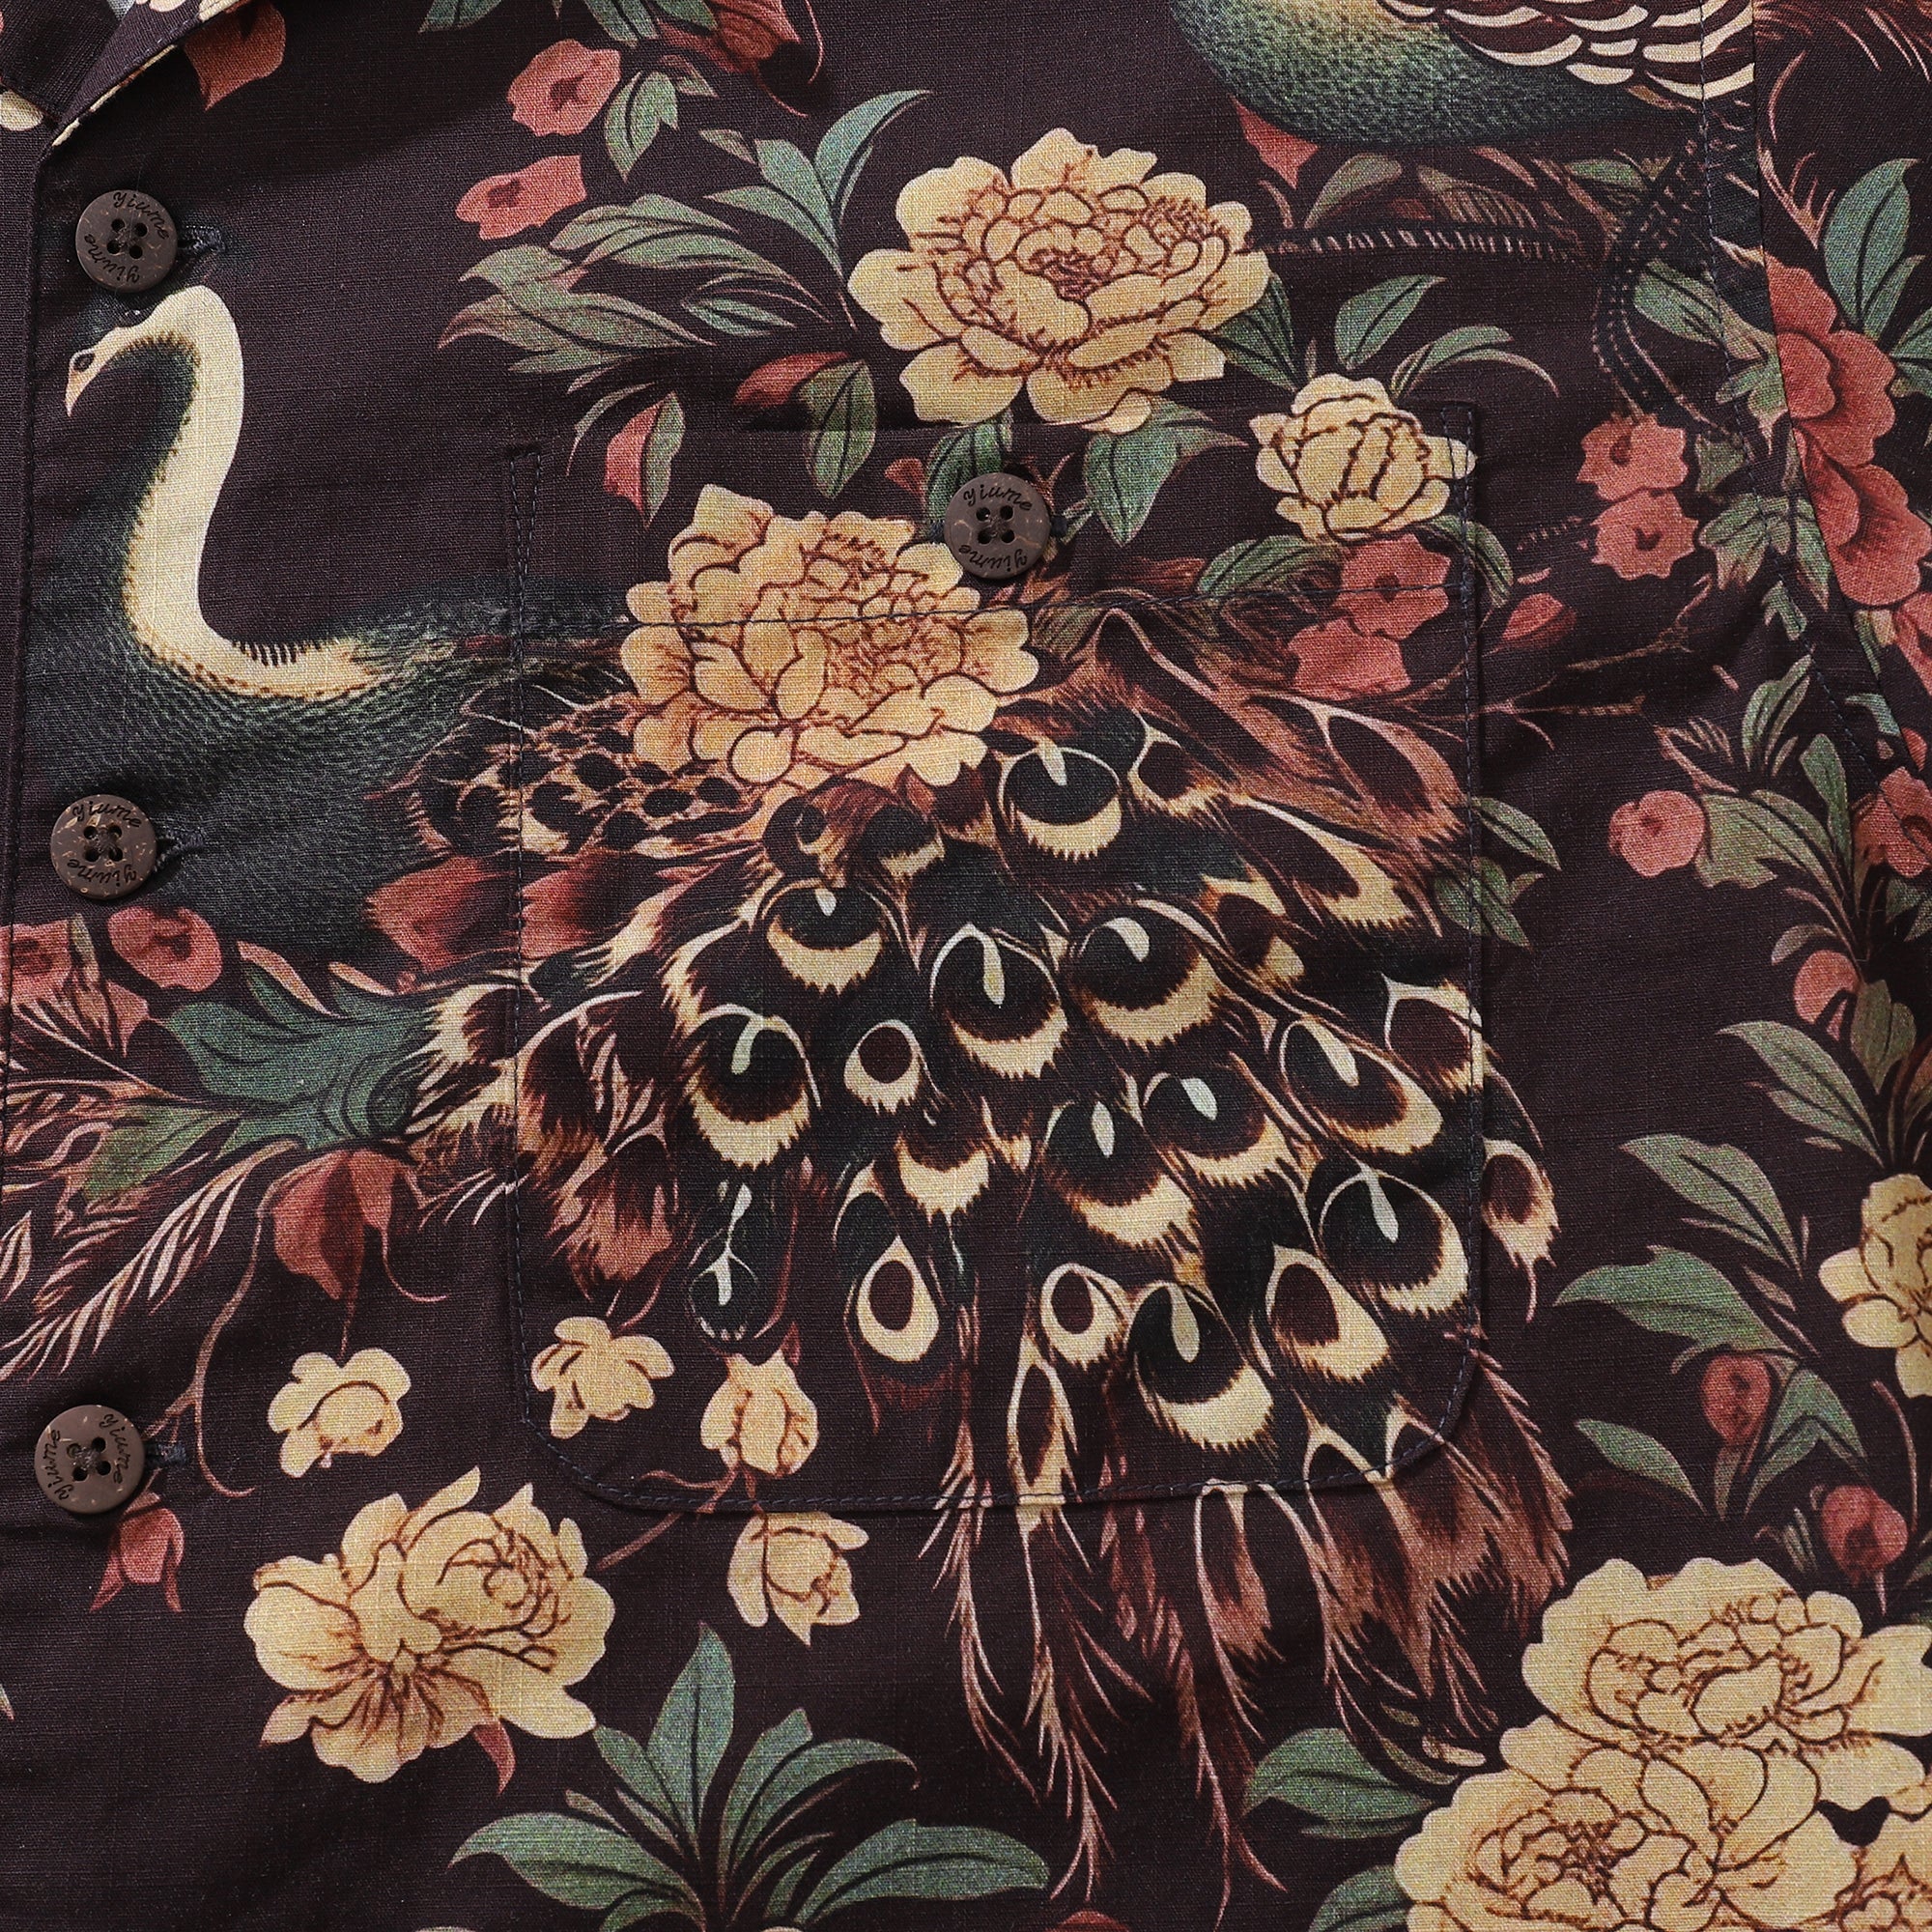 Camisa hawaiana para hombre Camisa de pavo real y flores Cuello de campamento 100% algodón